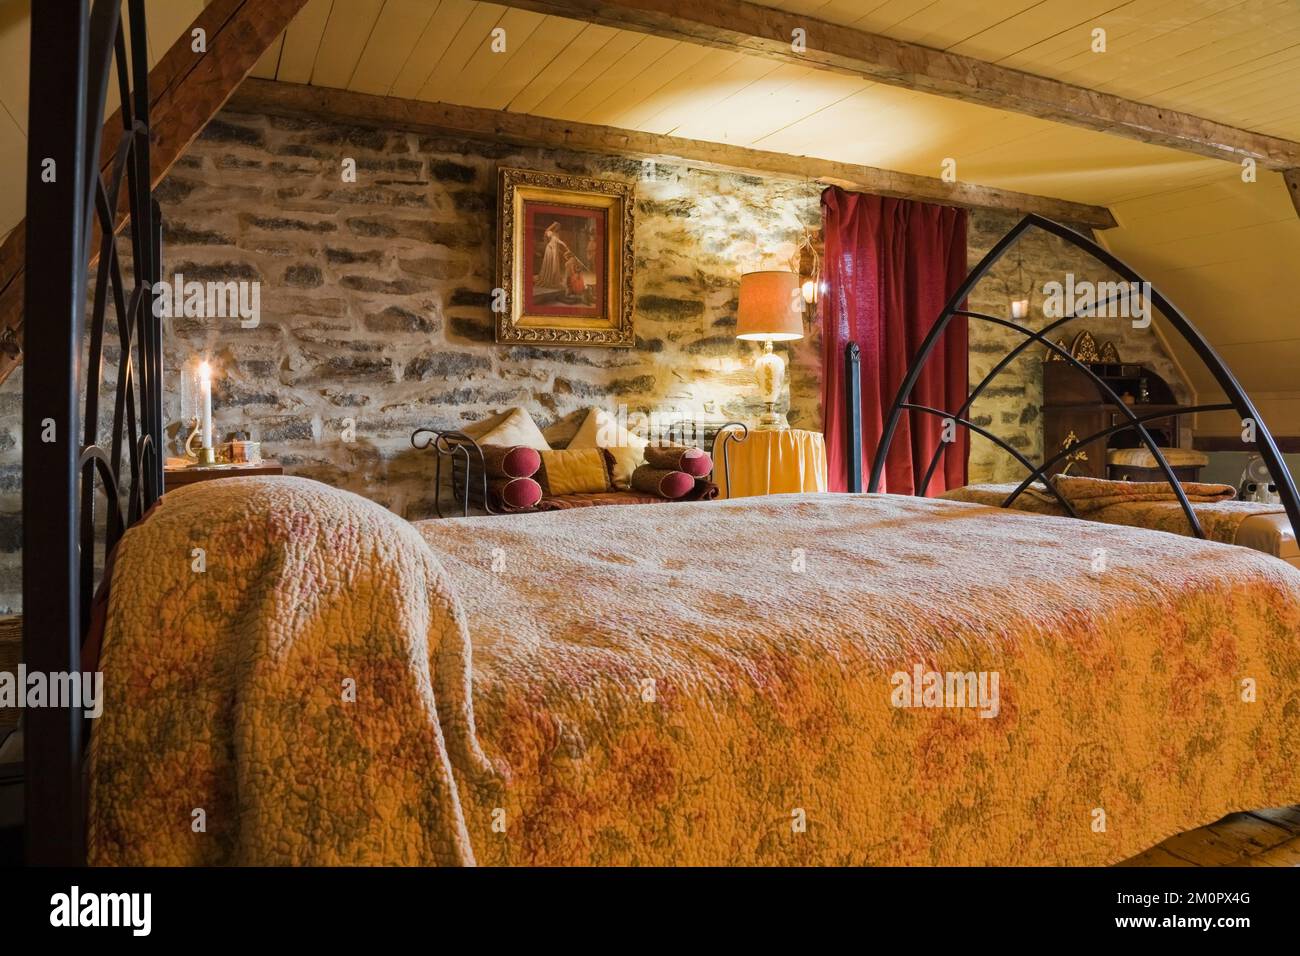 Letto matrimoniale ricoperto di motivi floreali, copriletto nella camera da letto principale al piano superiore, all'interno di una vecchia casa in pietra di campo in stile cottage canadese del 1850 circa. Foto Stock